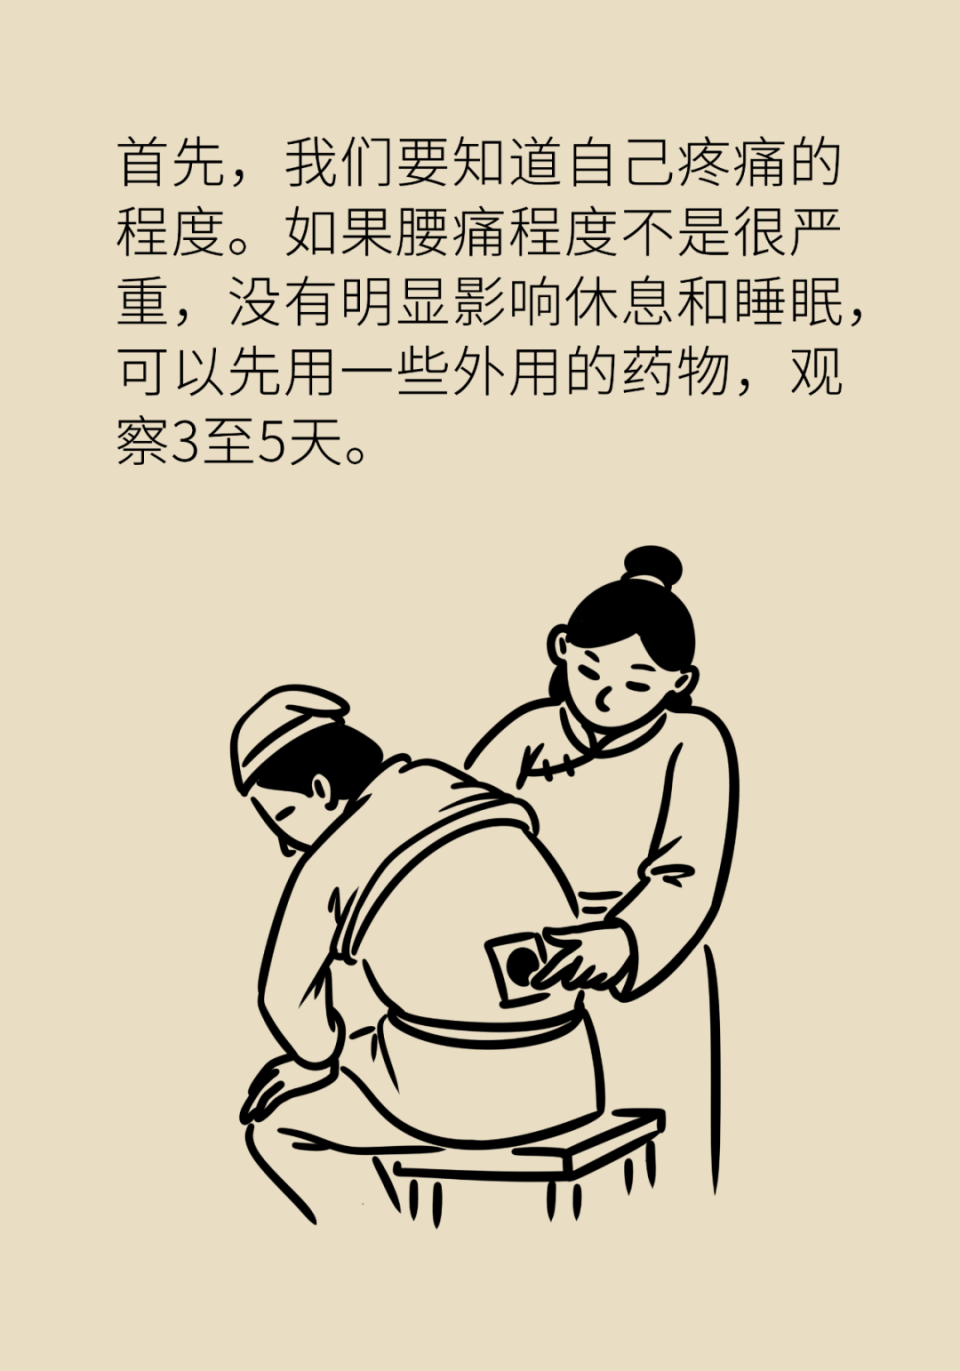 腰痛不一定要去医院,兵团医院副院长,北京协和医院援